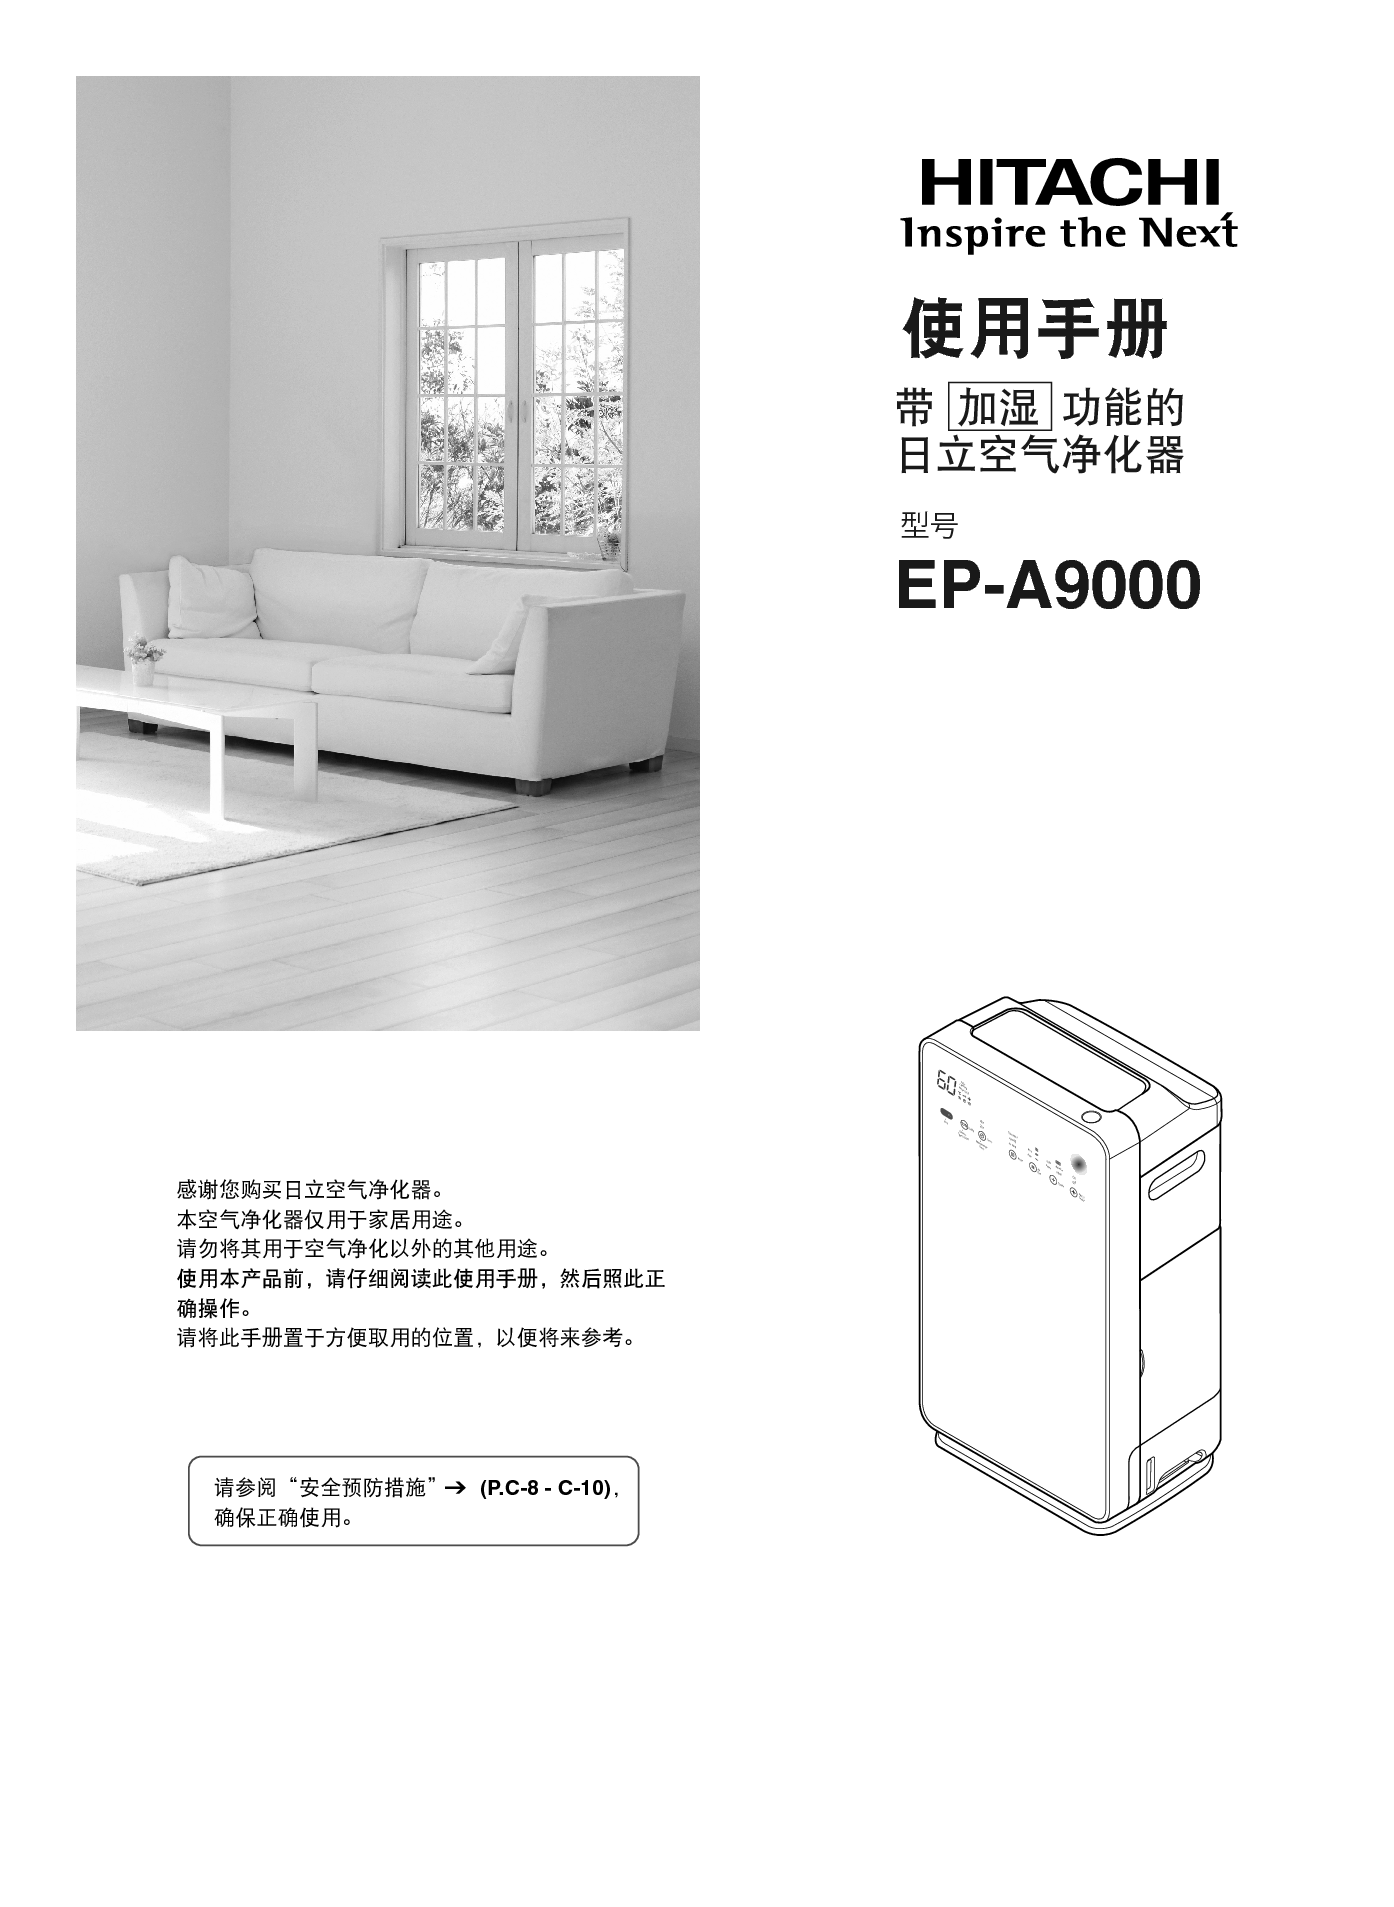 日立 Hitachi EP-A9000 使用手册 封面